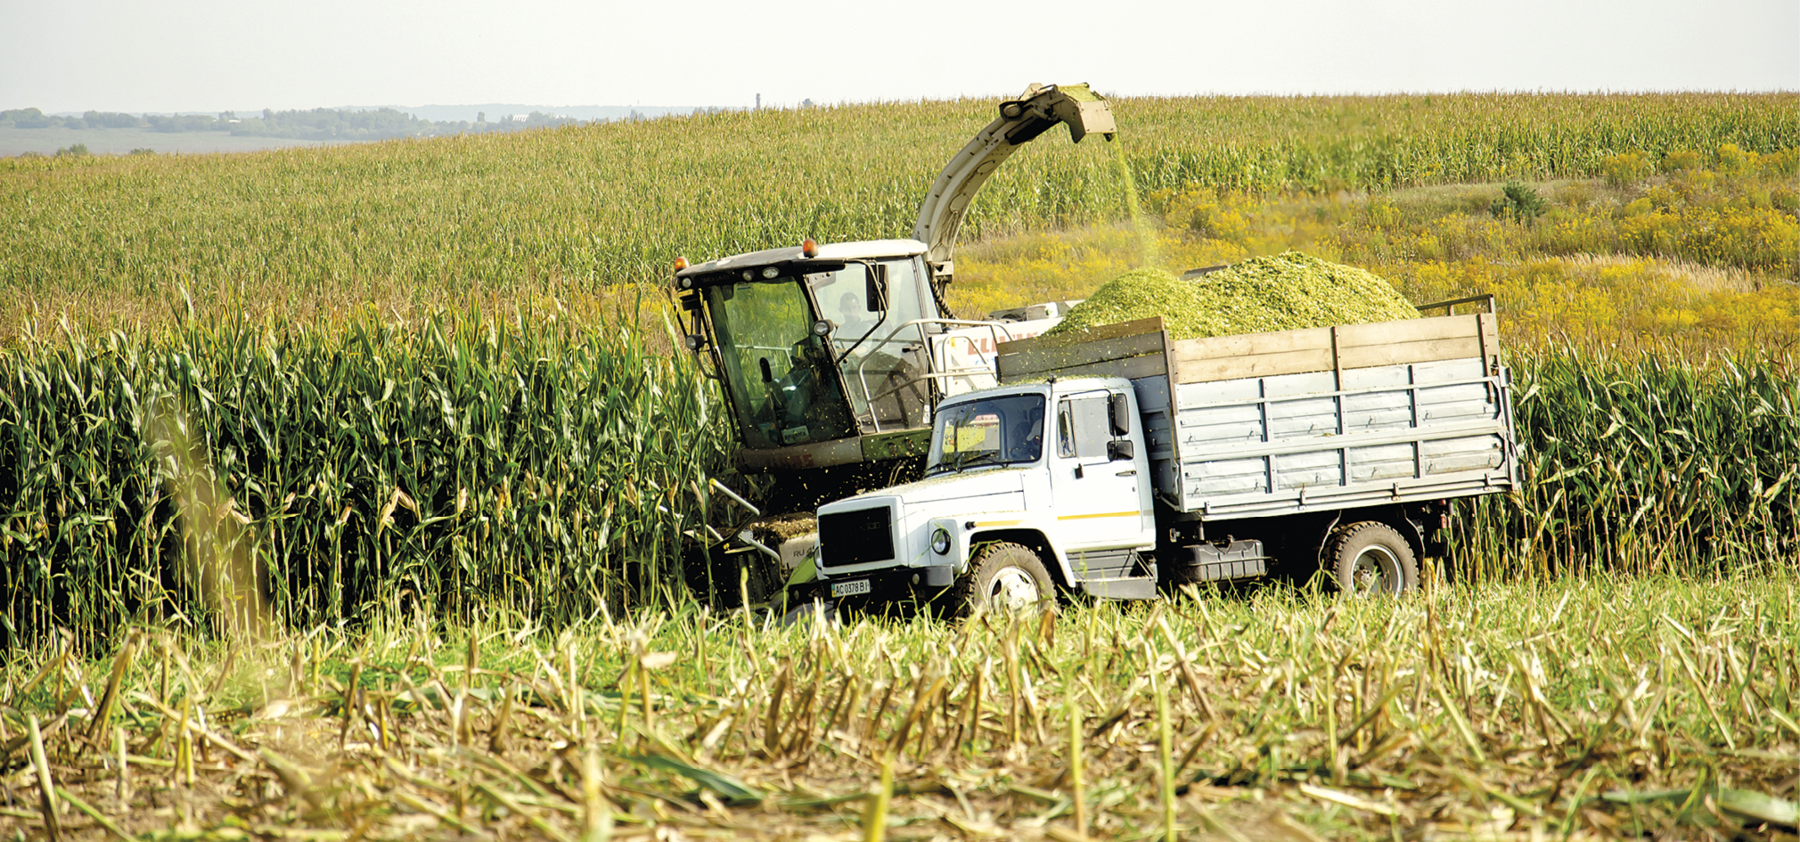 Fotografia. Vista para uma superfície levemente inclinada ocupada por plantação de milho. No primeiro plano, destaque para uma máquina agrícola carregando a caçamba da carreta com o milho colhido.